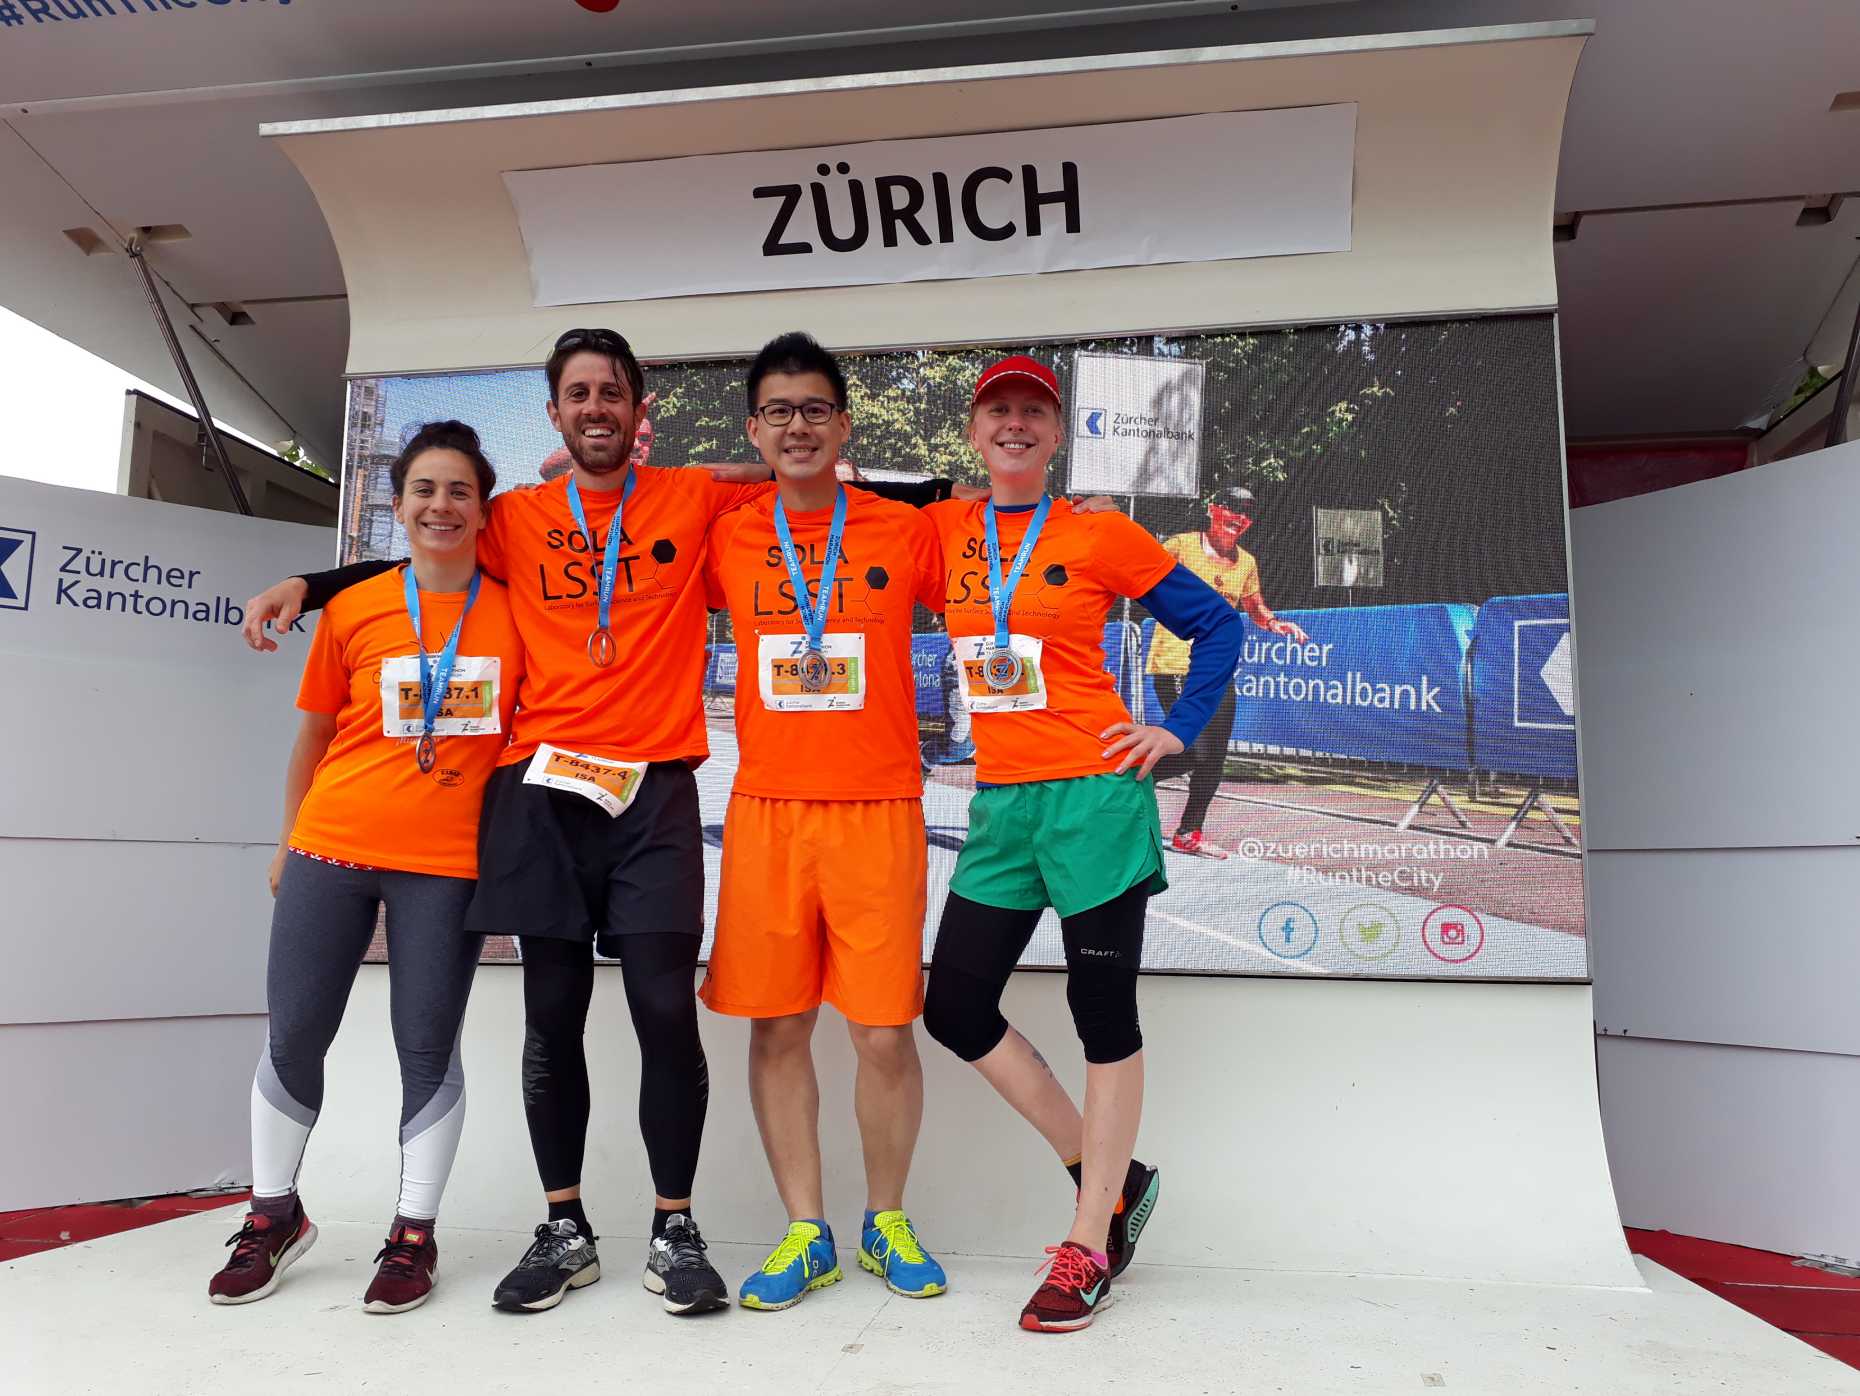 ISA Group at Zurich Marathon